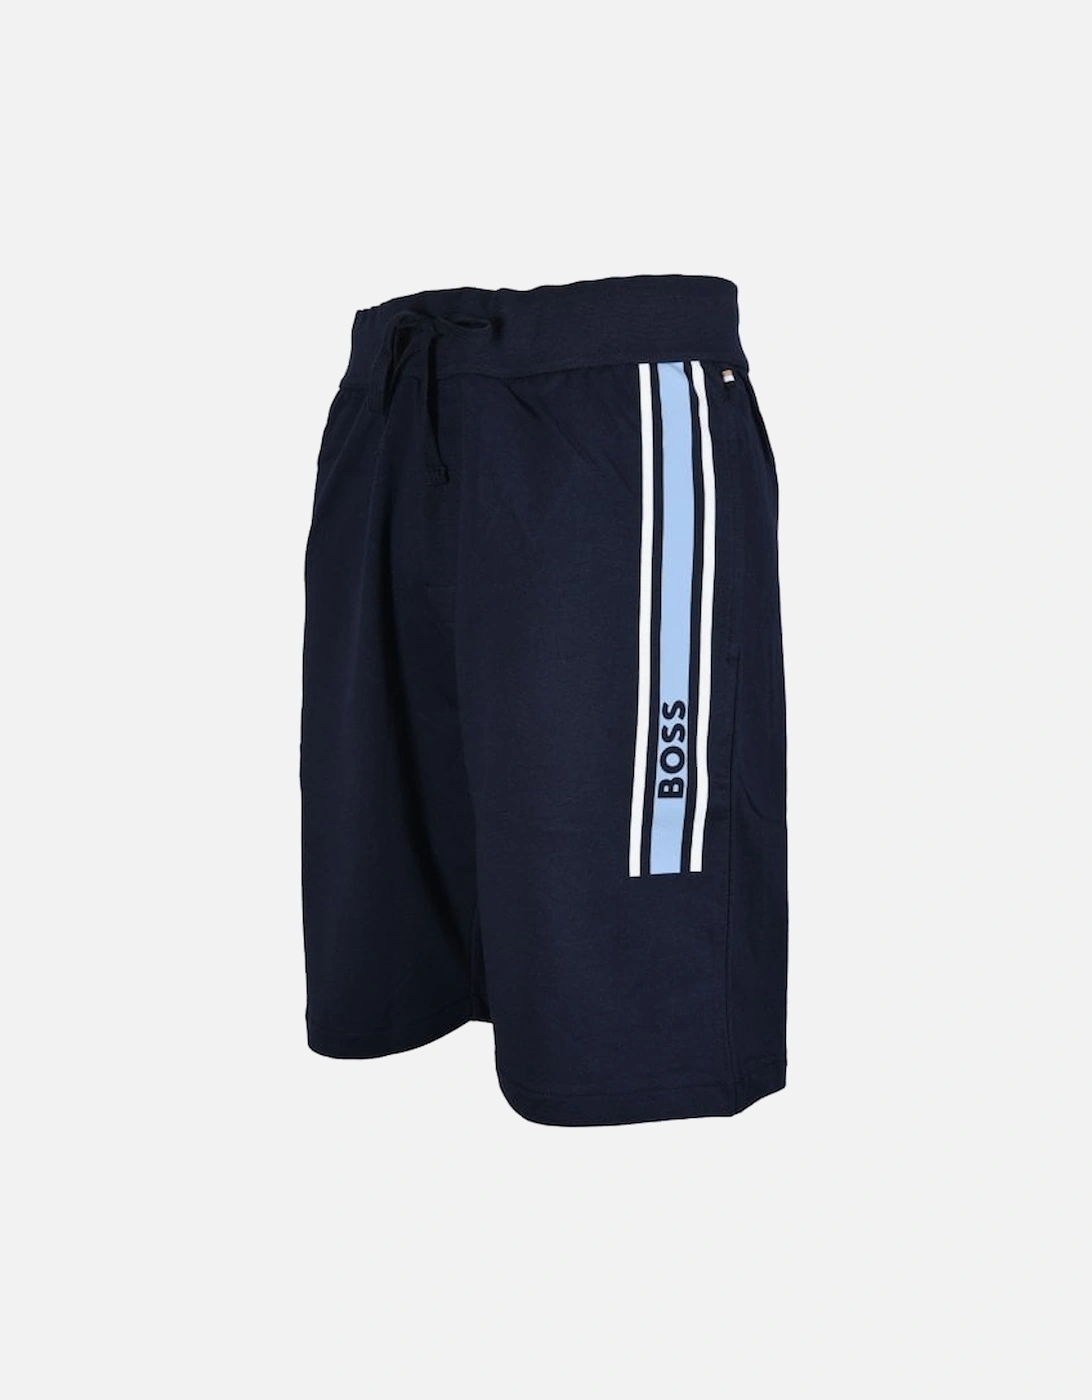 Authentic Logo Loungewear Tracksuit Shorts, Navy/blue